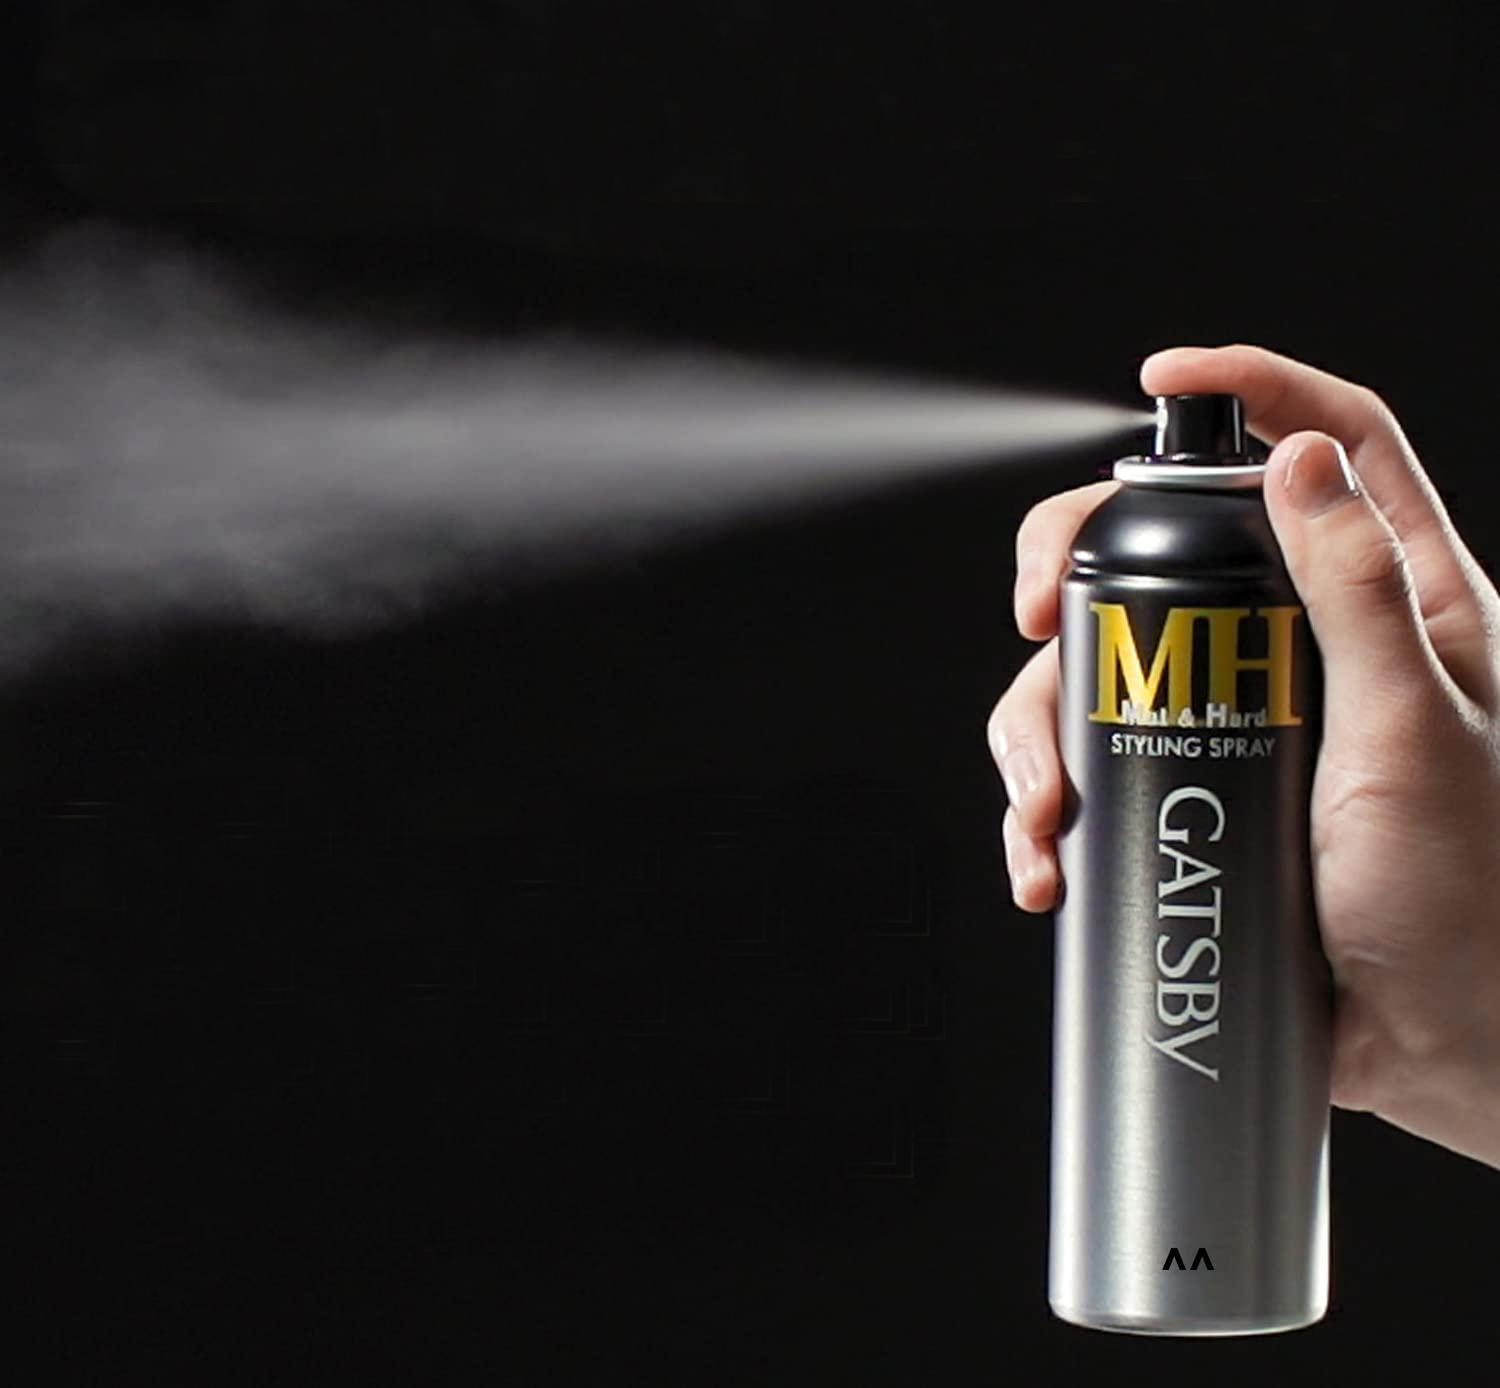 Keo Xịt Tóc Gatsby Mat &amp; Hard Styling Spray 170g